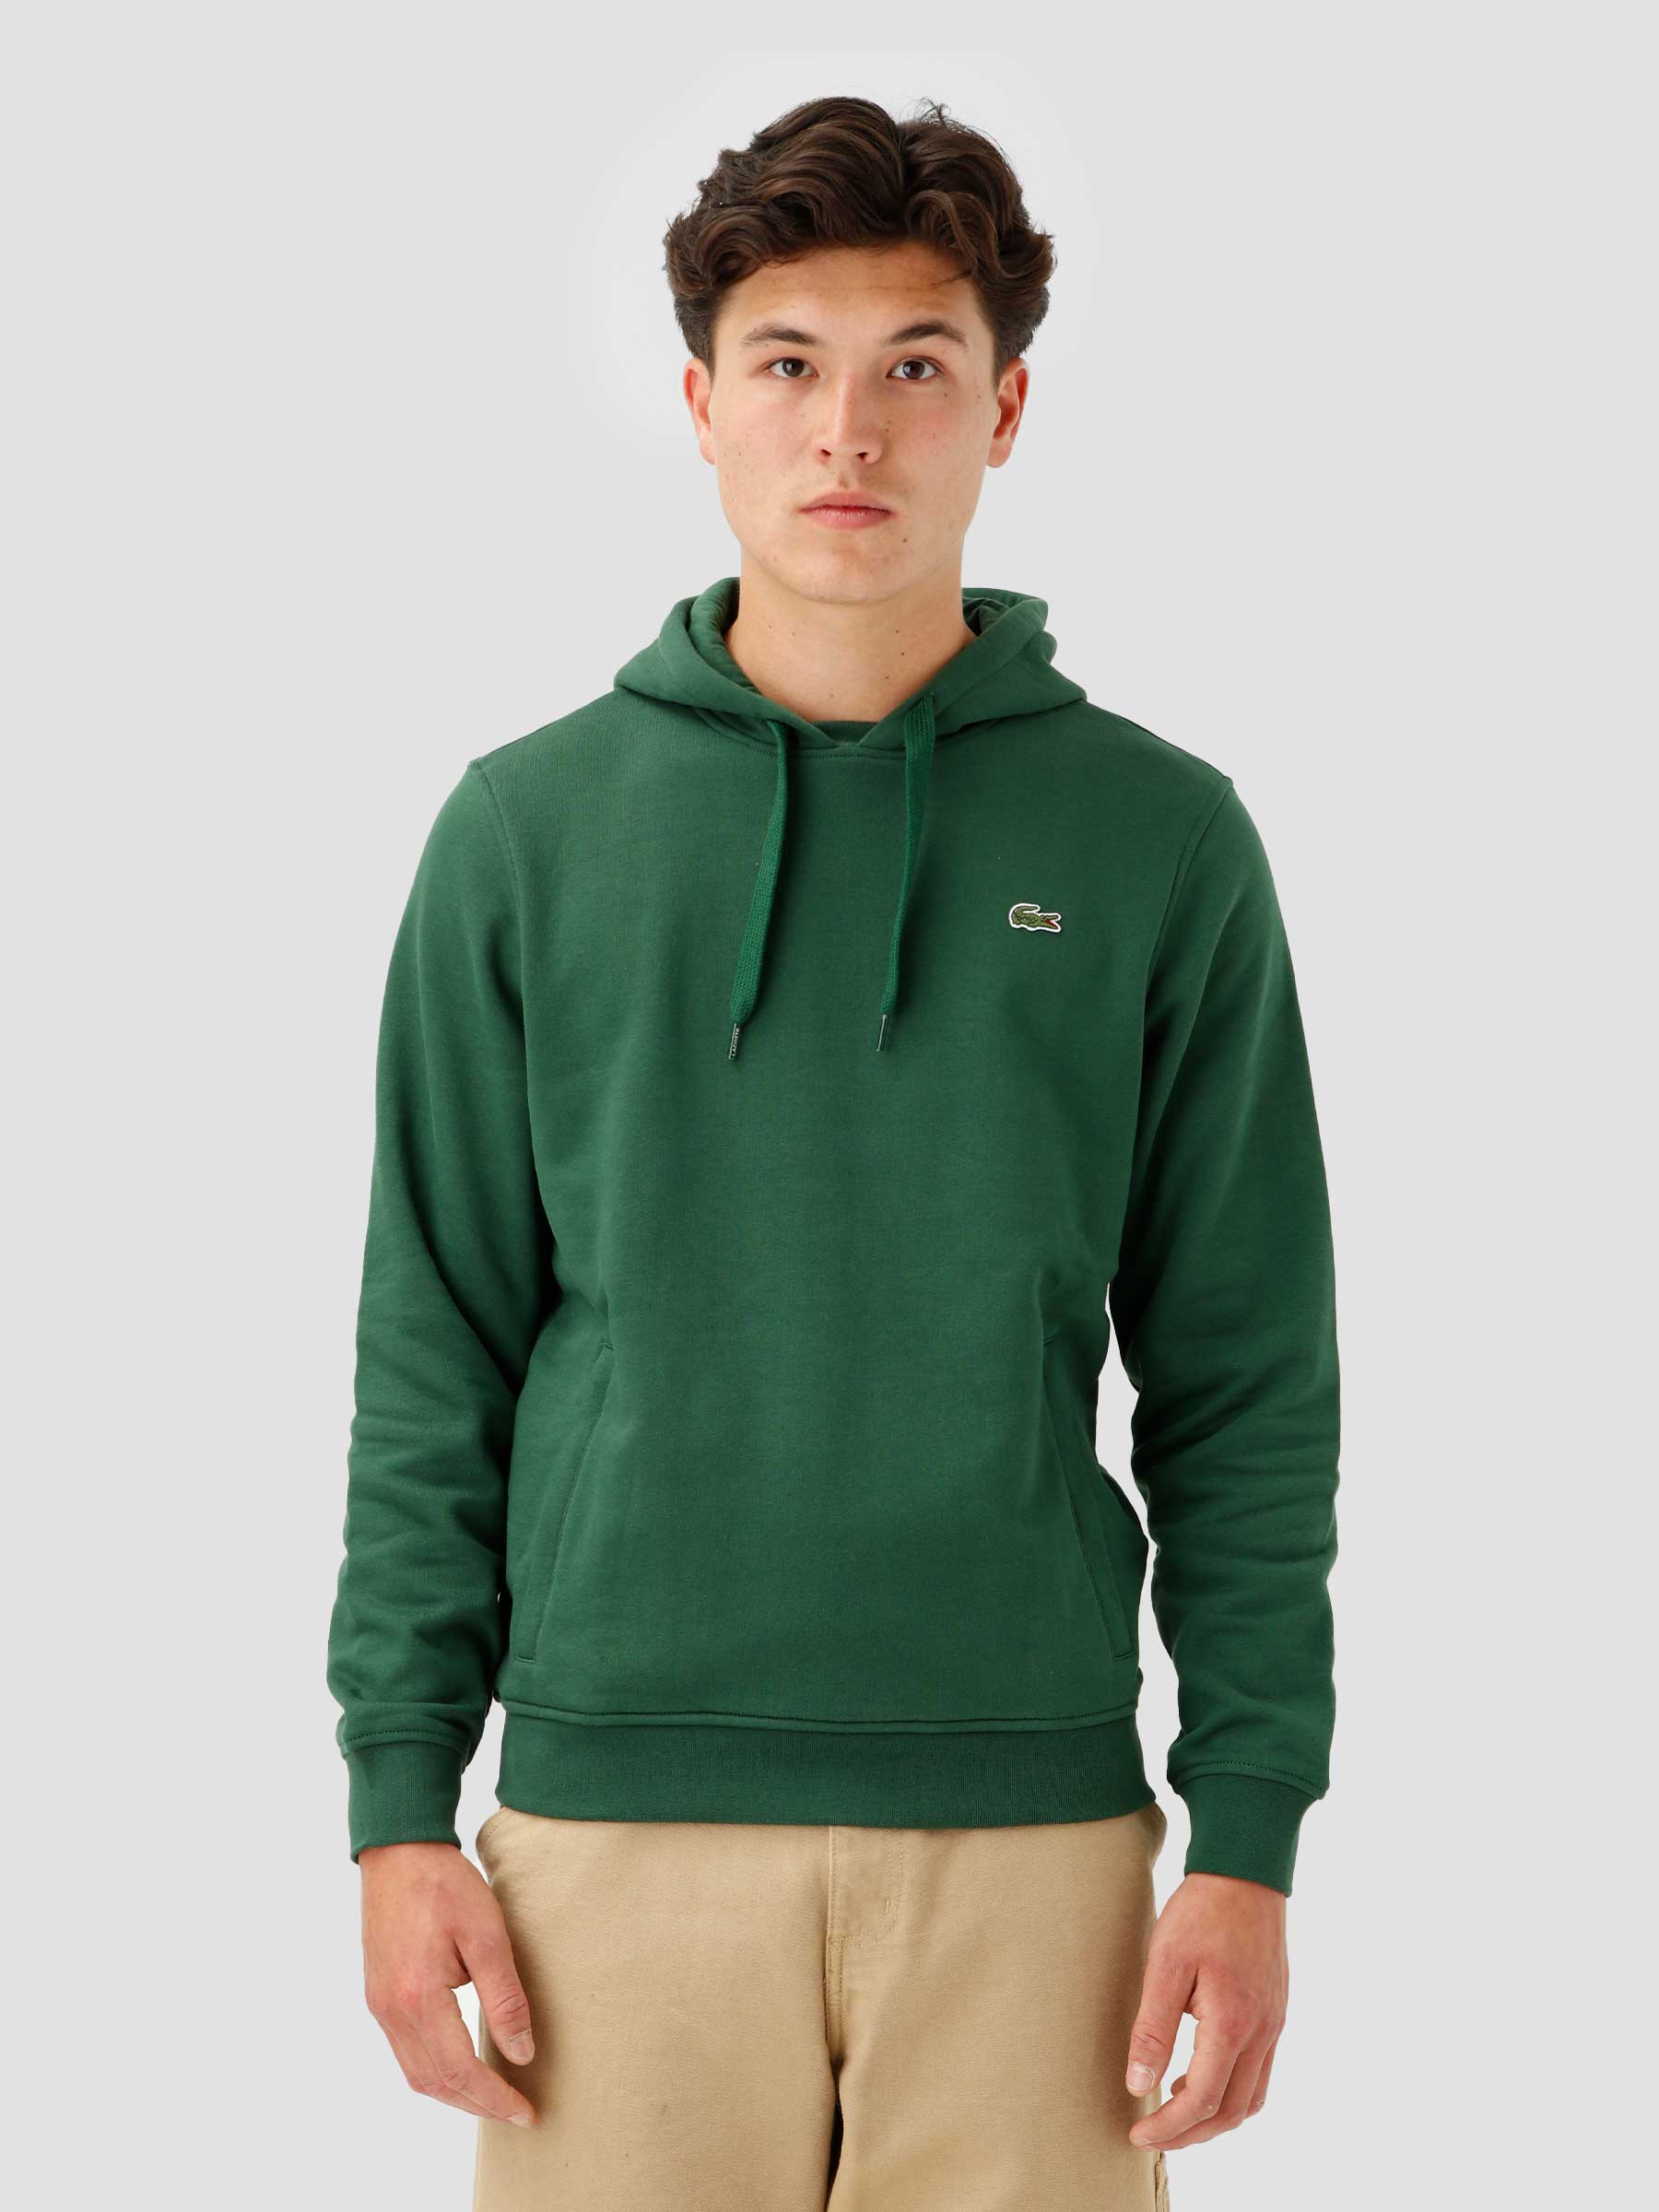  Men's Sweatshirt Green SH1527-21